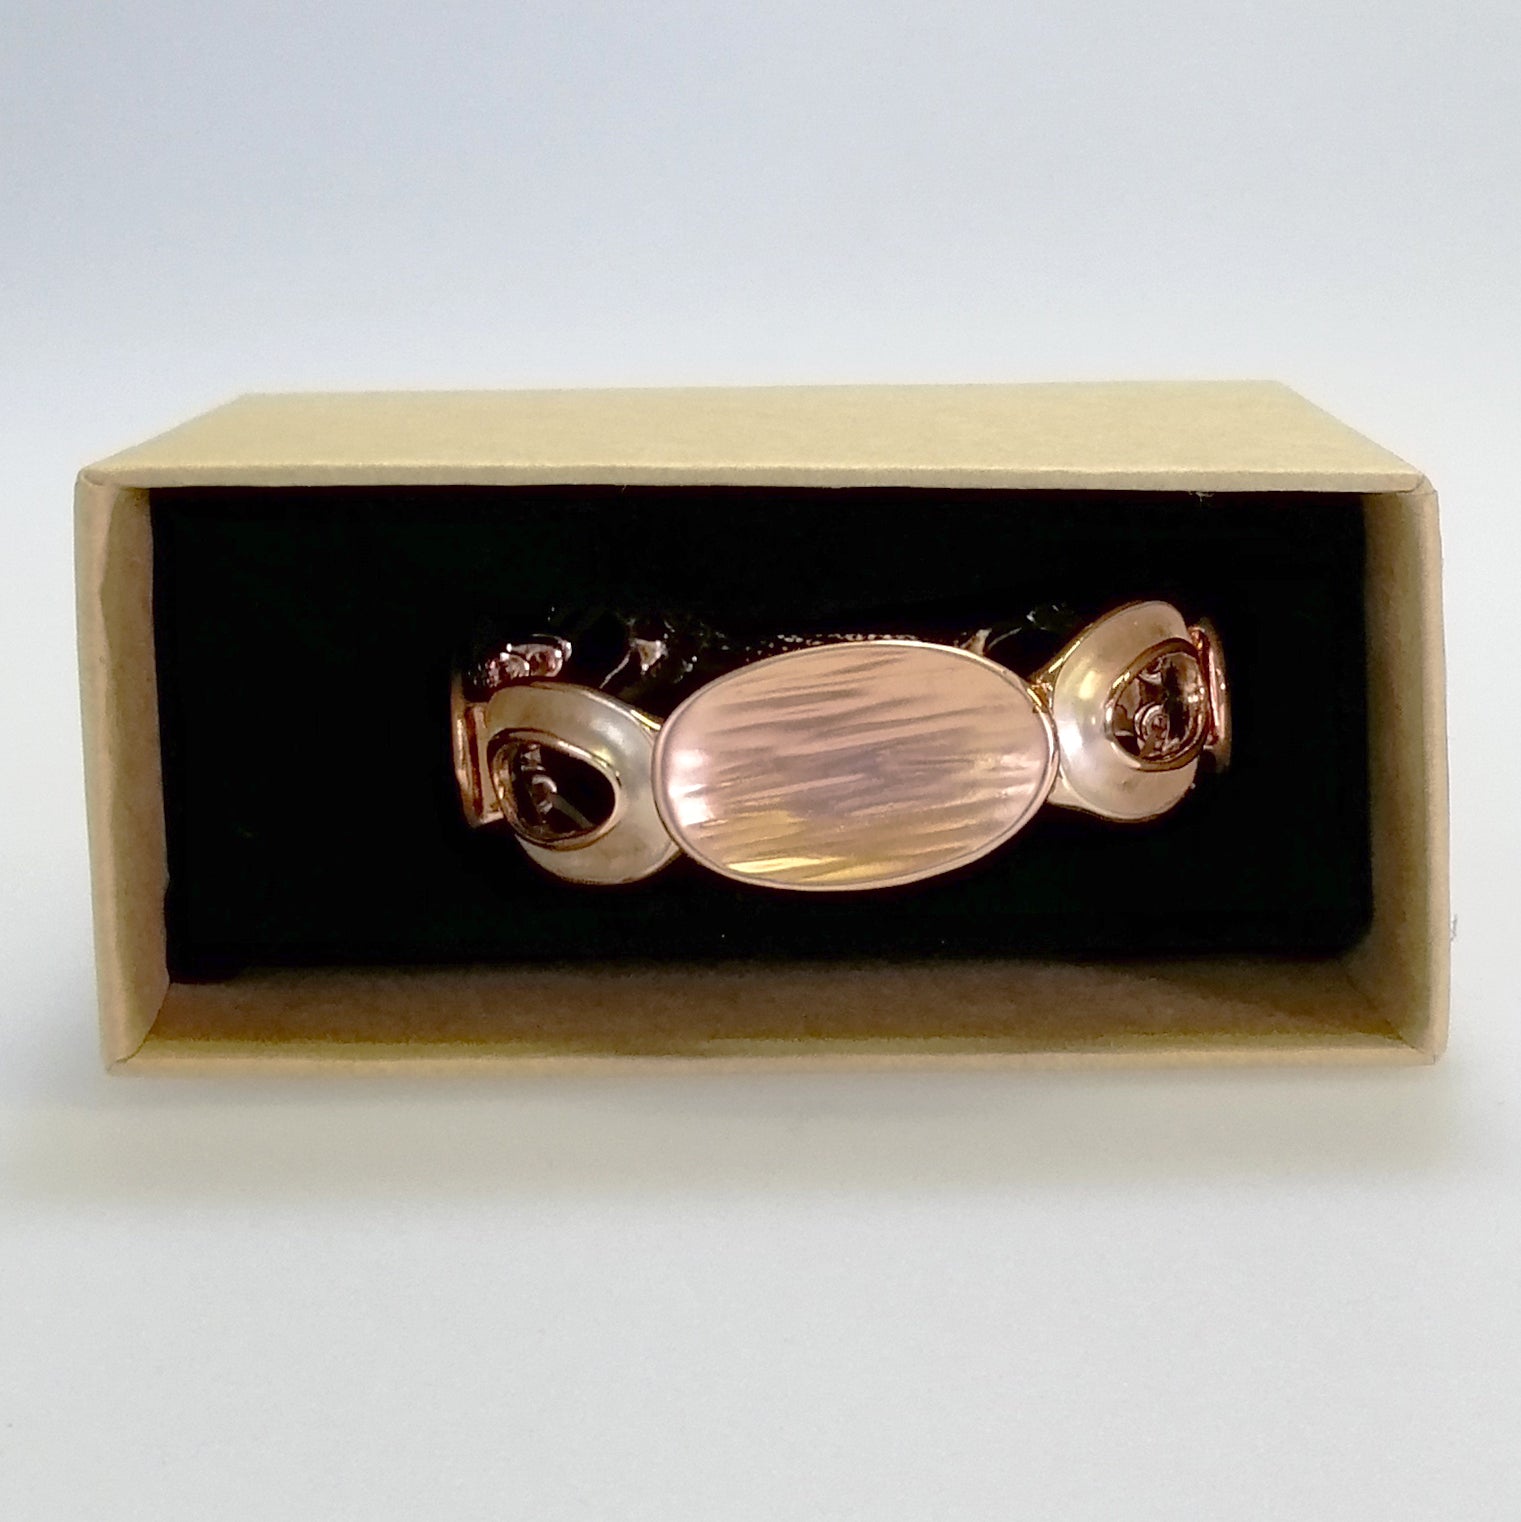 Kiwicraft - Rose Gold Round Beads Bracelet